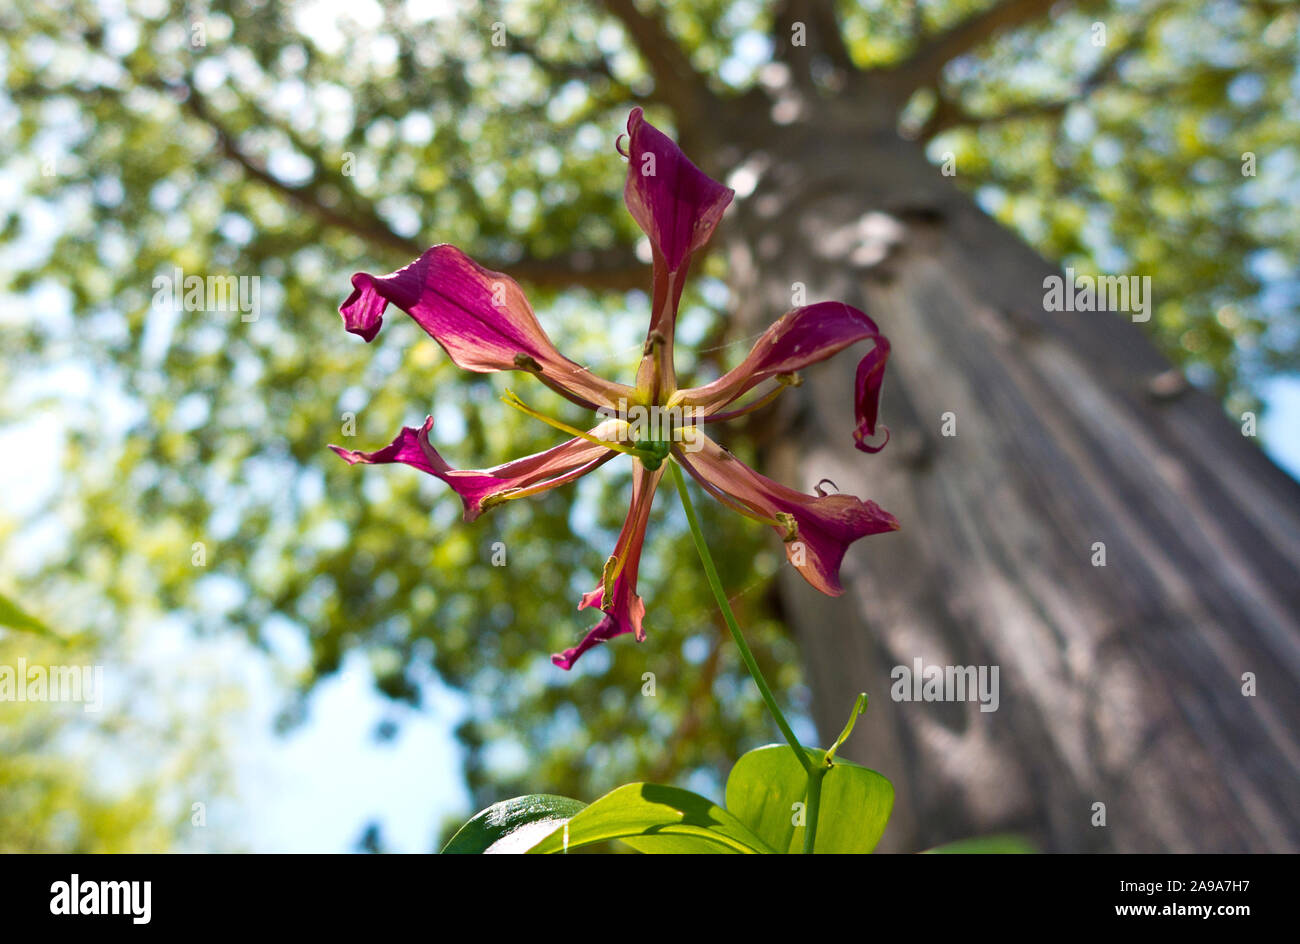 Der sehr variable blüht der Flamme Lily bricht mit dem Regen und es ist ein trailing Kriechgang. Die blätter Ende in Ranken, die das Wachstum unterstützen Stockfoto